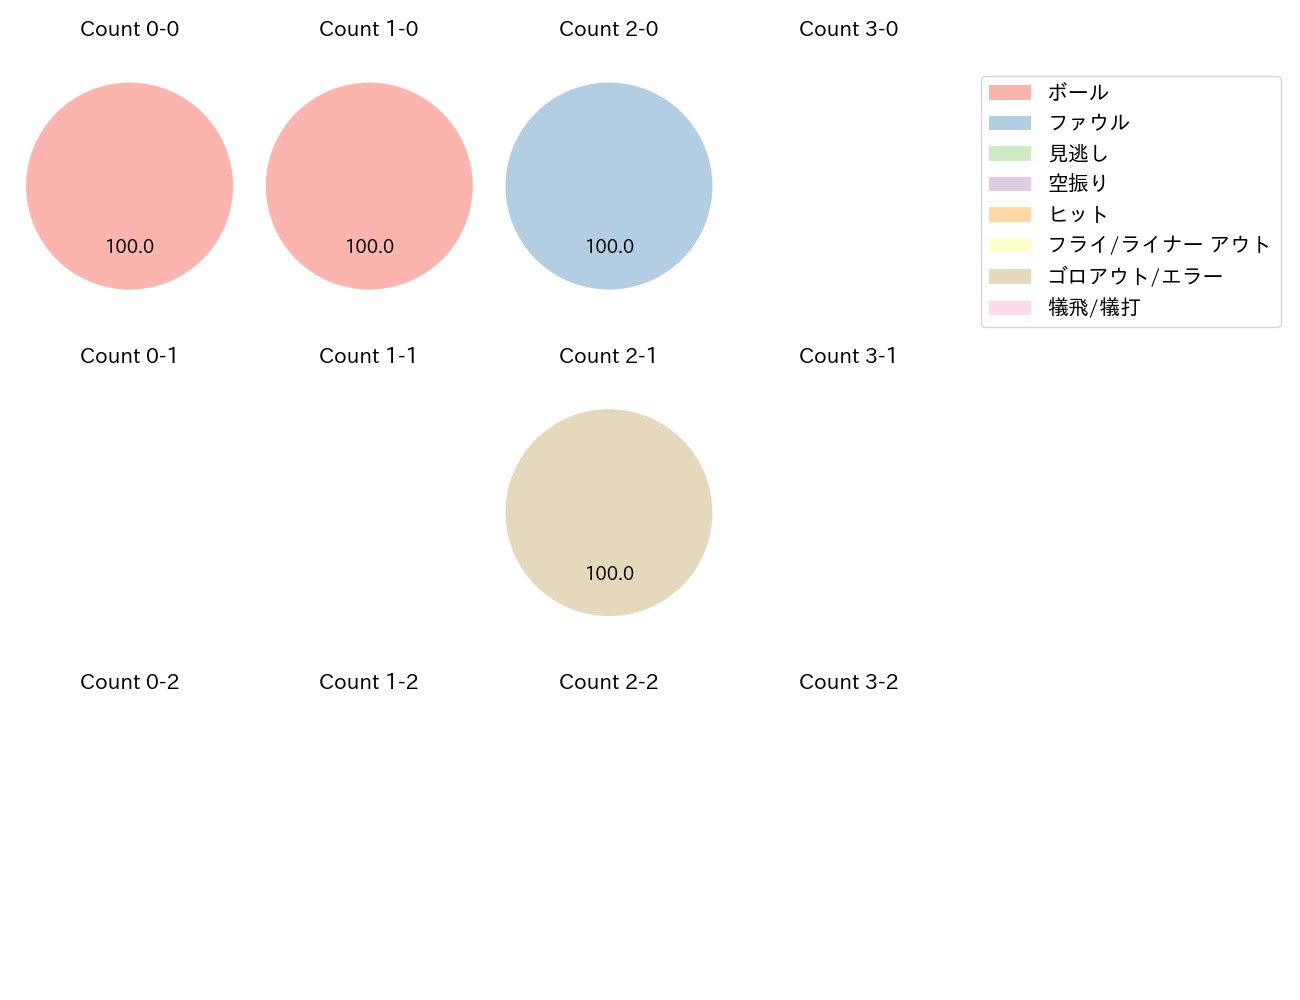 髙田 知季の球数分布(2021年3月)